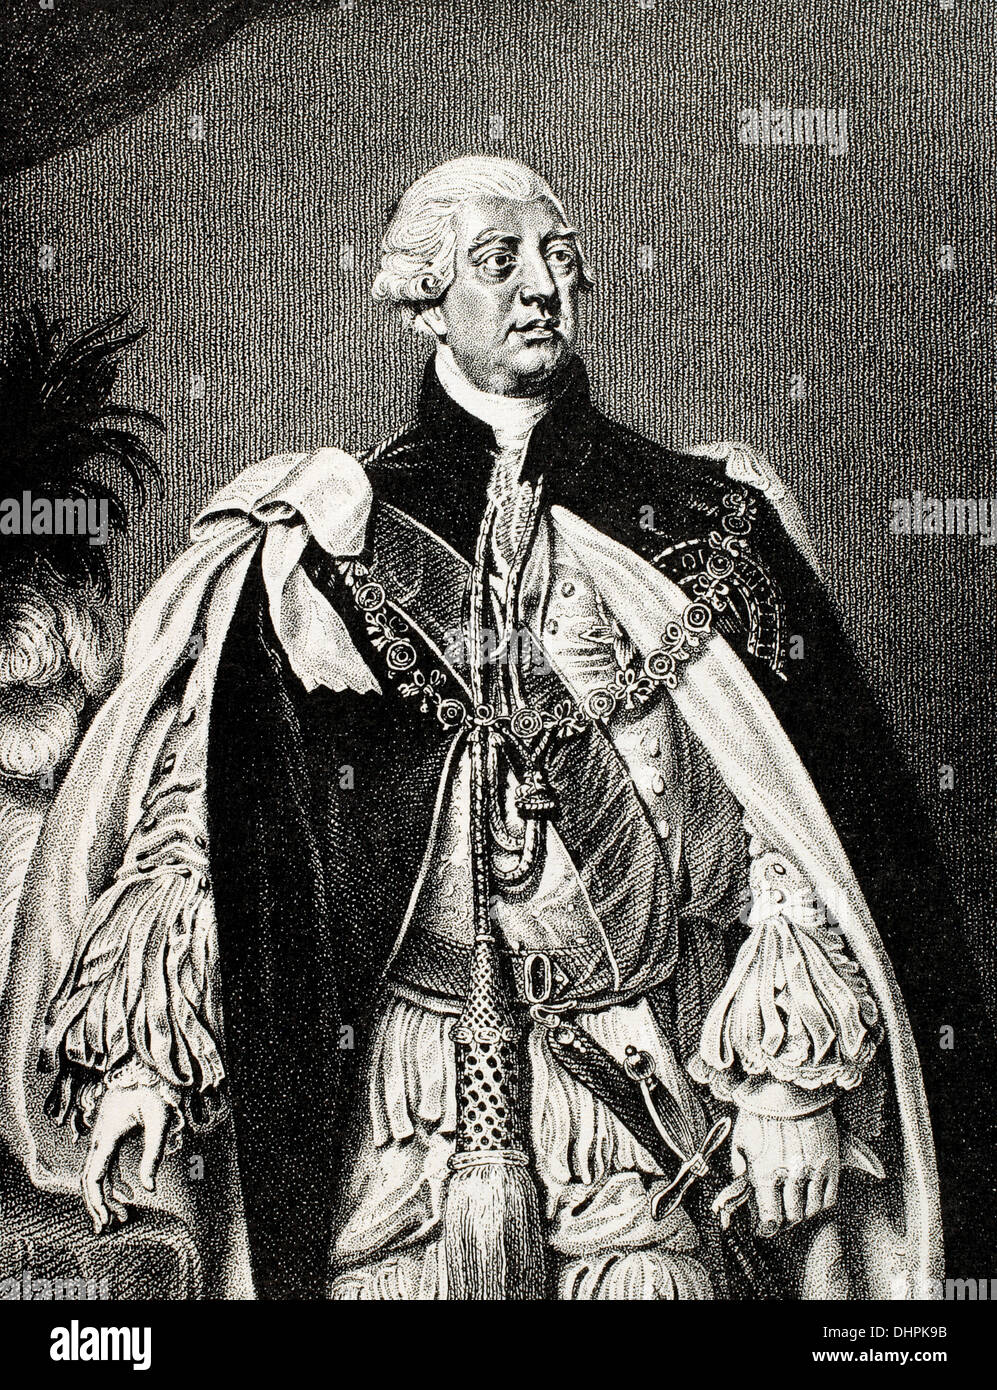 George III (1738-1820). König von Großbritannien und Irland später König des Vereinigten Königreichs und von Hannover. Gravur. Stockfoto